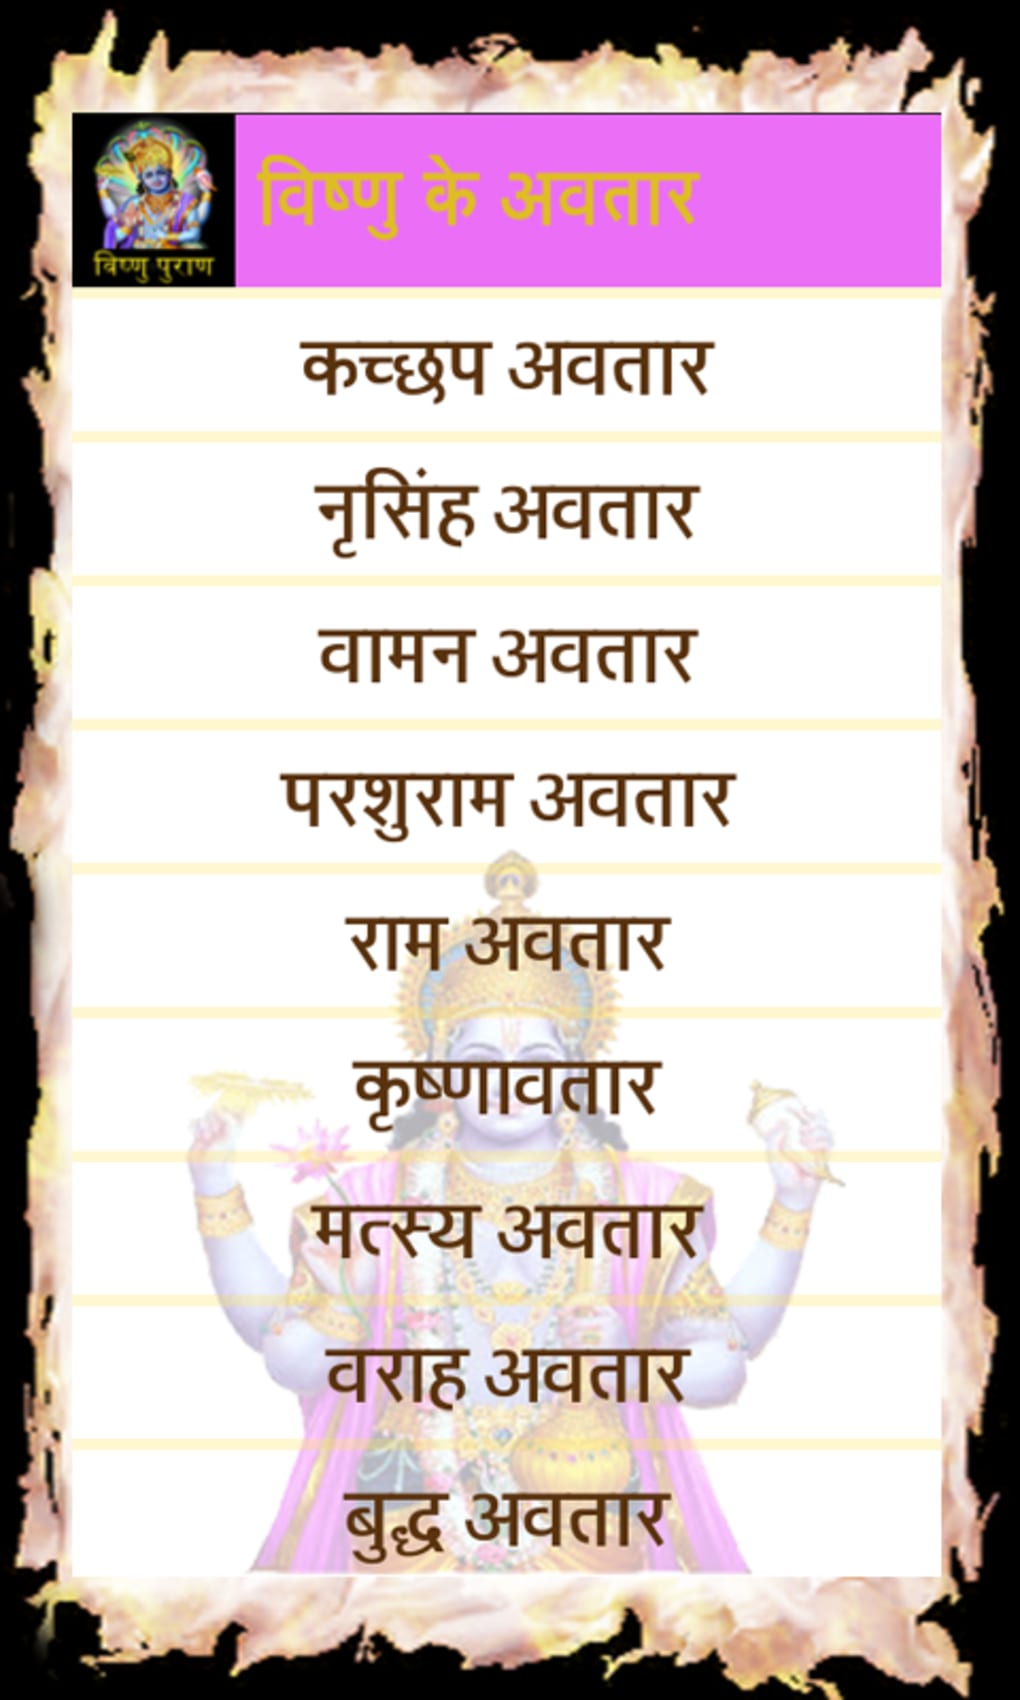 Vishnu Puran in Hindi APK for Android - Download